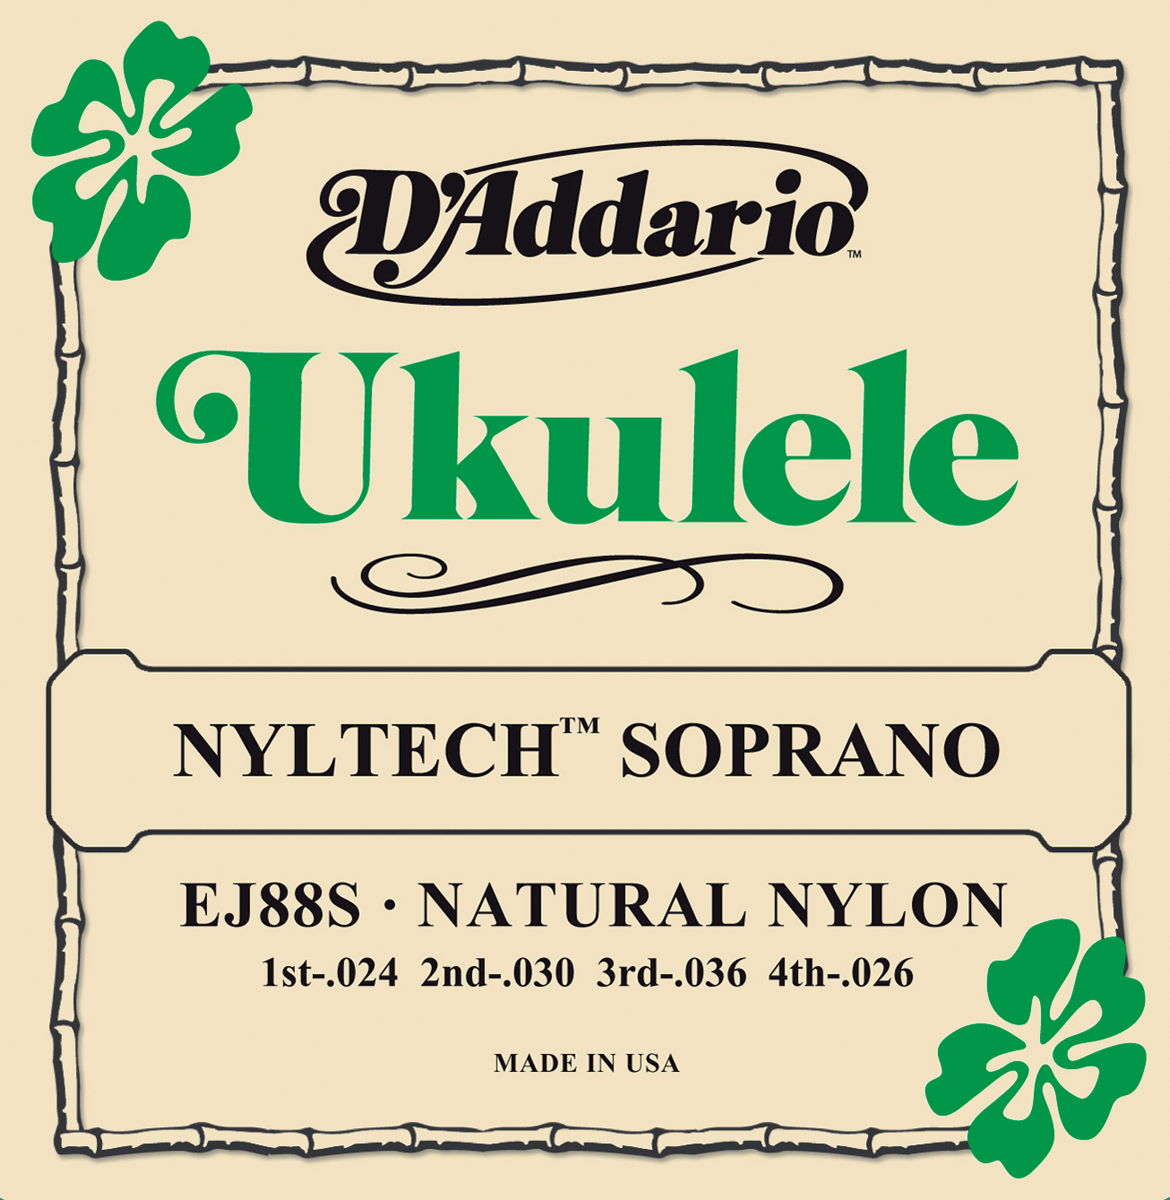 D'addario Ukulele Soprano Nyltech 024.026 Ej88s - Ukulele strings - Variation 1